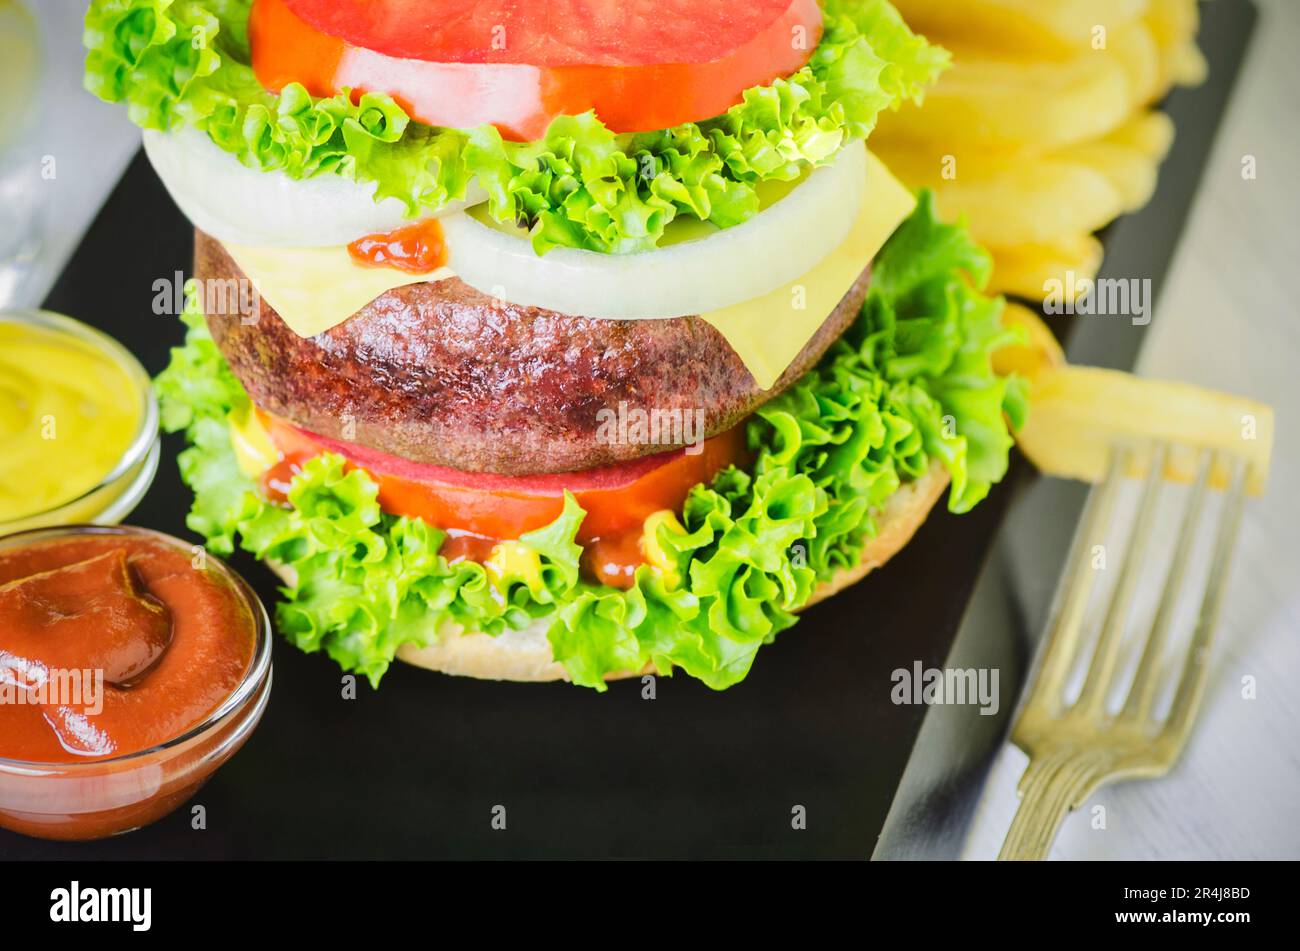 Délicieux hamburger de bœuf grillé géant, grand hamburger classique épais avec frites et légumes frais. Banque D'Images